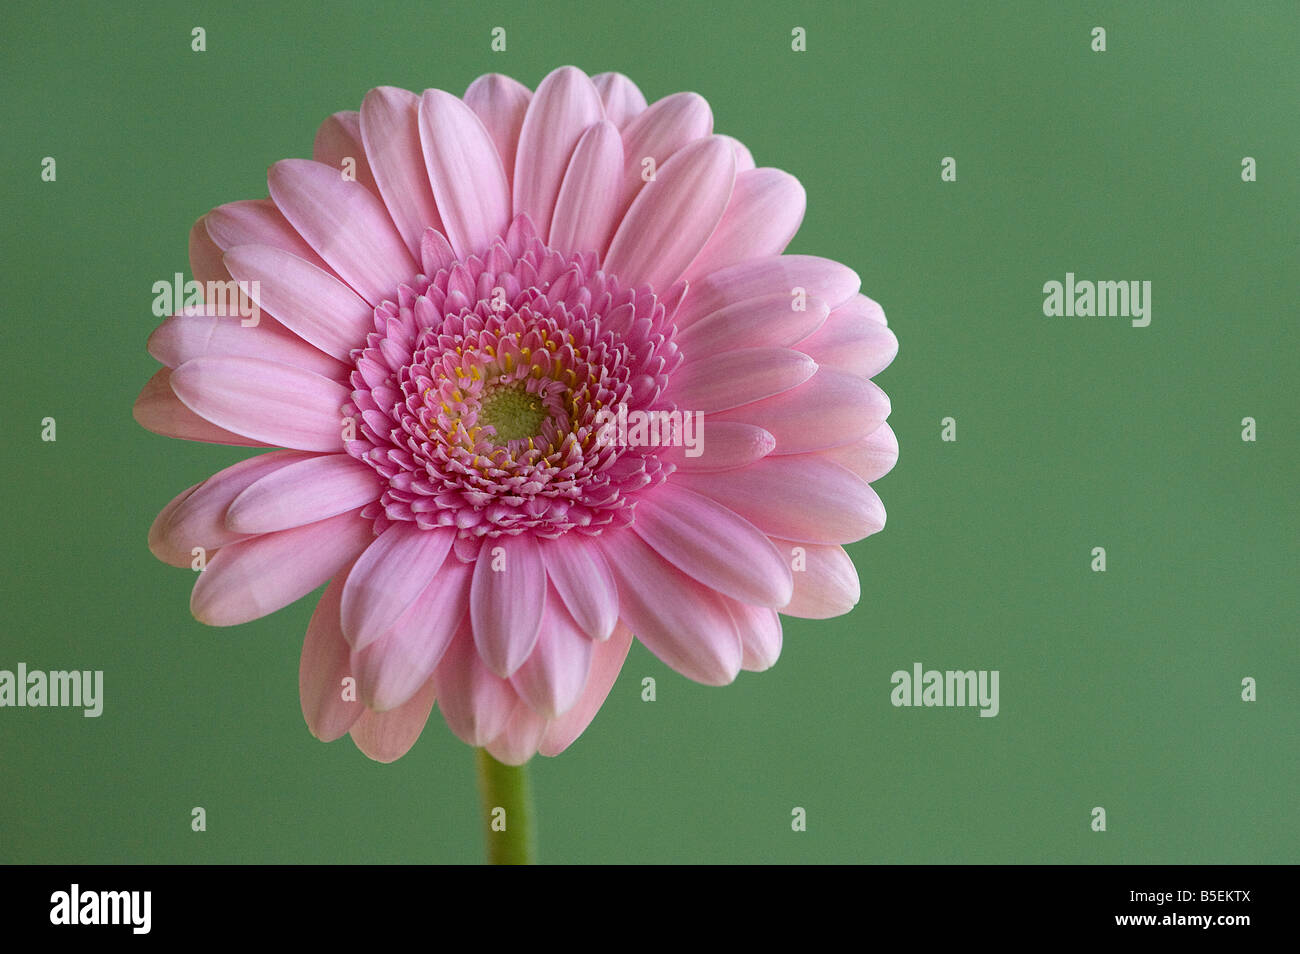 Pink gerbera mostrante simmetria radiale disco e fiori ligulati tipica della famiglia a margherita Foto Stock